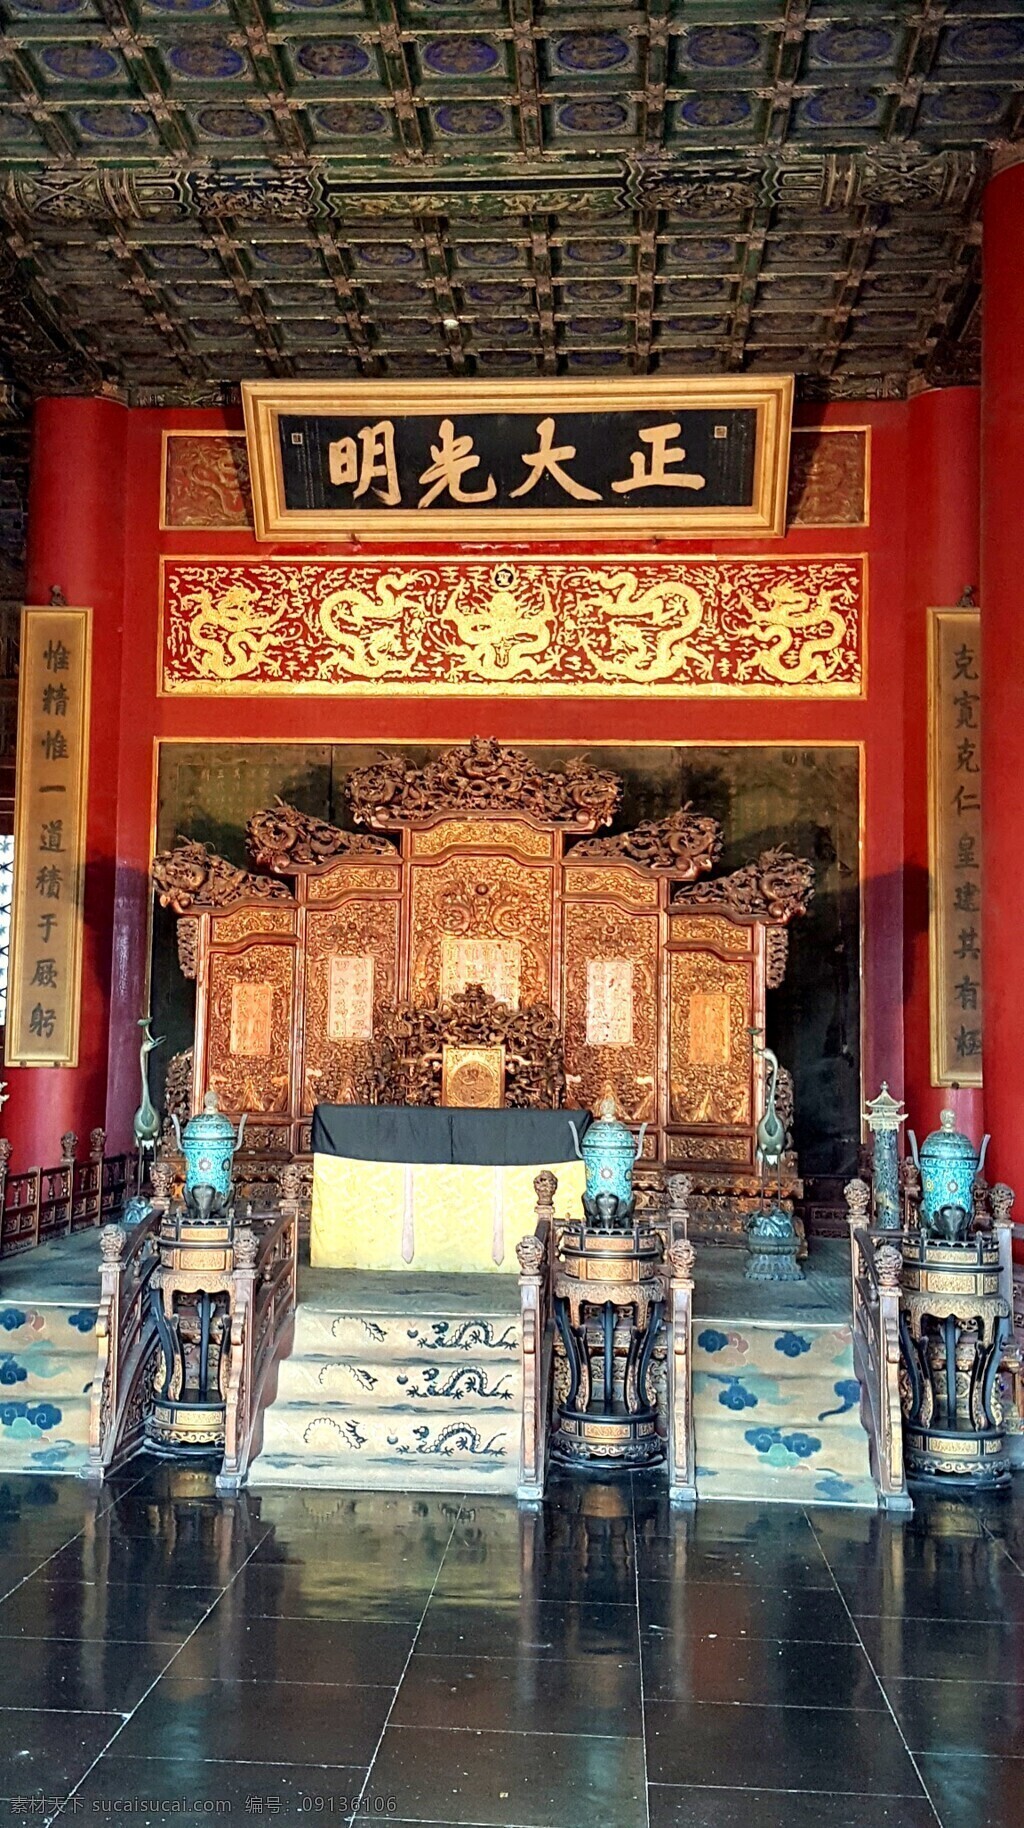 北京 故宫 乾清宫 正大光明 顺治御笔 旅游摄影 人文景观